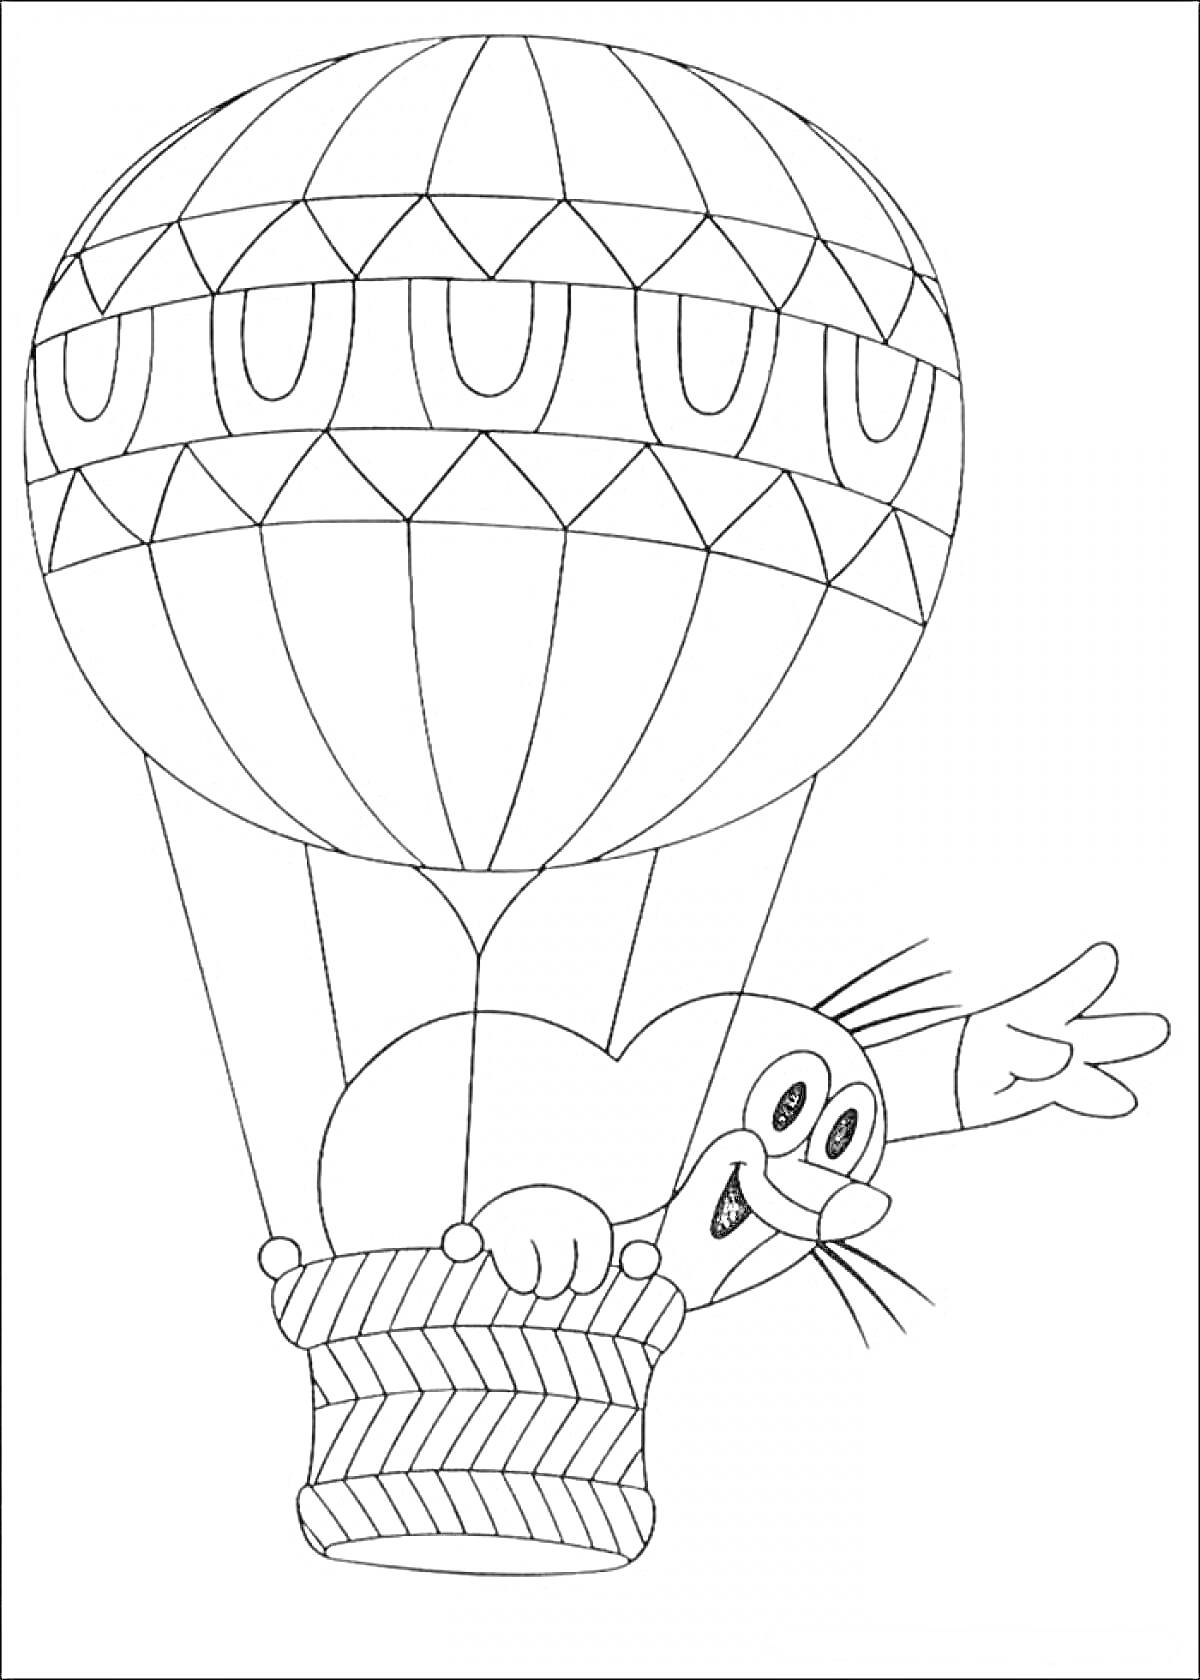 Раскраска Воздушный шар с кошкой в корзине